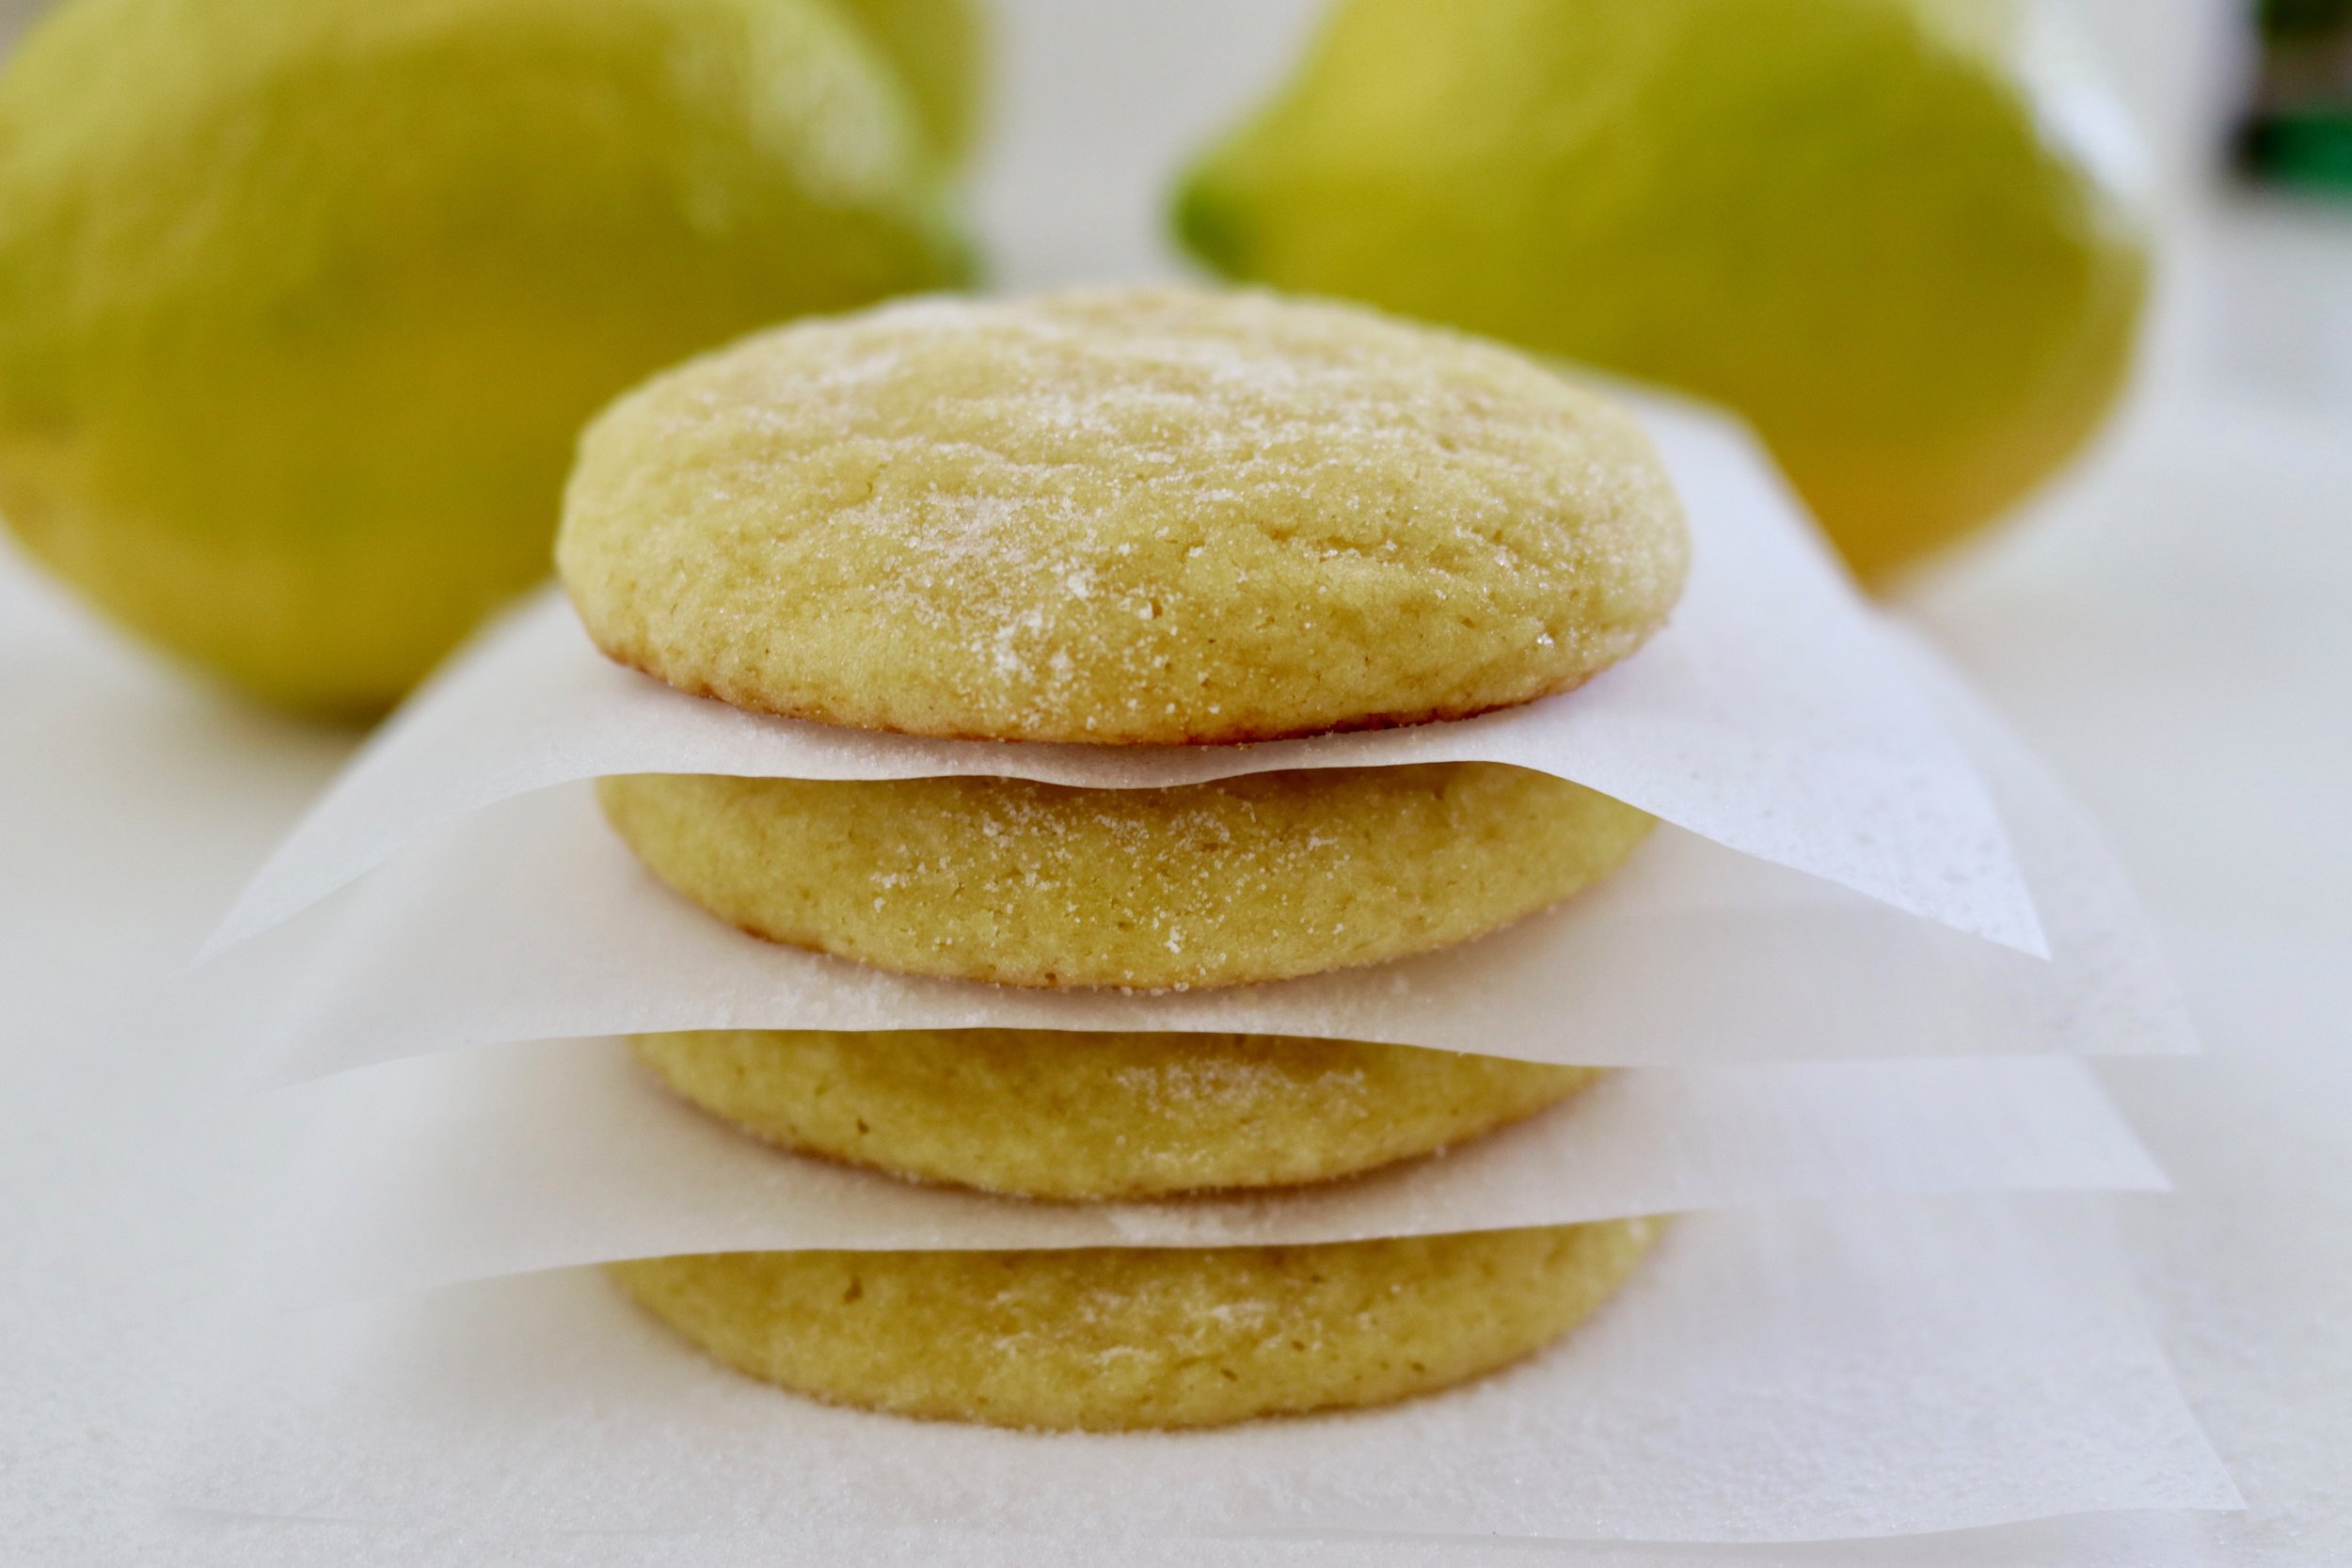 Sour Lemon Cookies